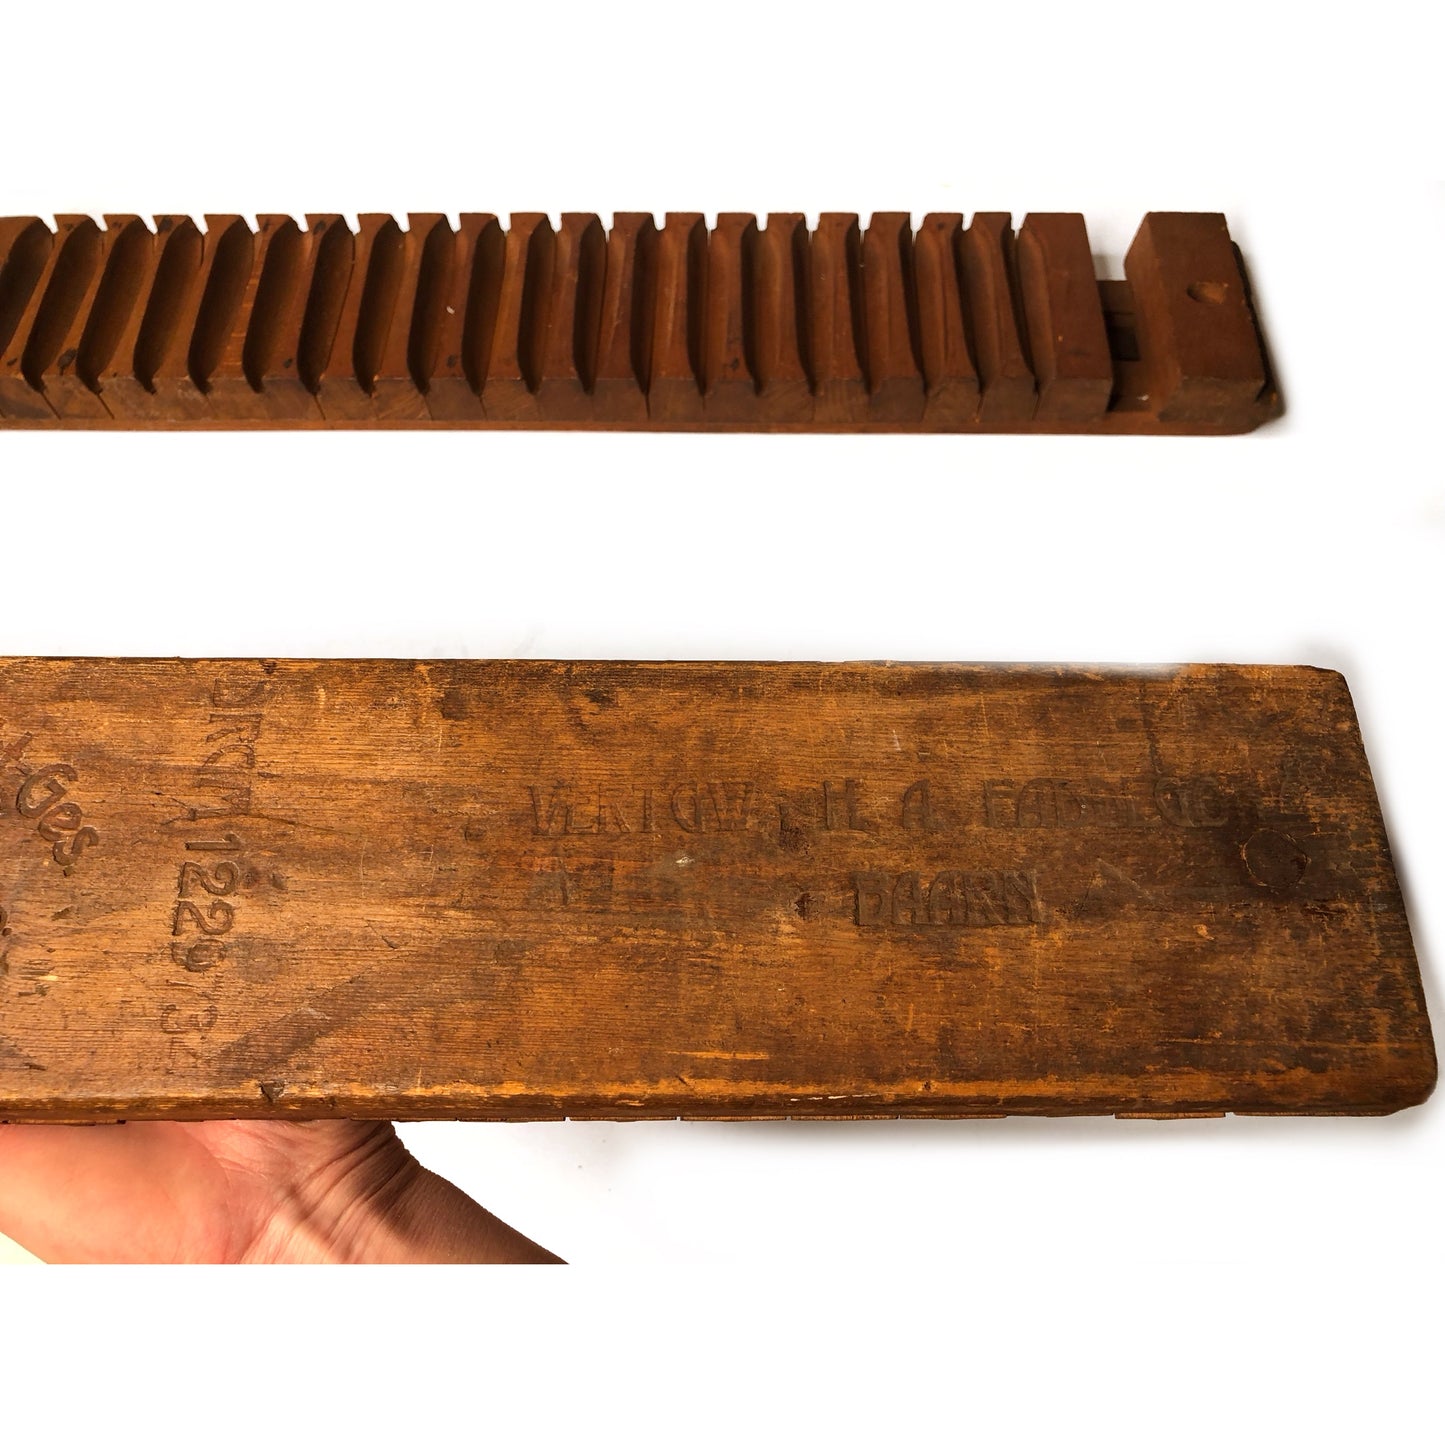 Load image into Gallery viewer, Antique cigar press or mold Carl Intelman Dutch or German origin 20 cigars
